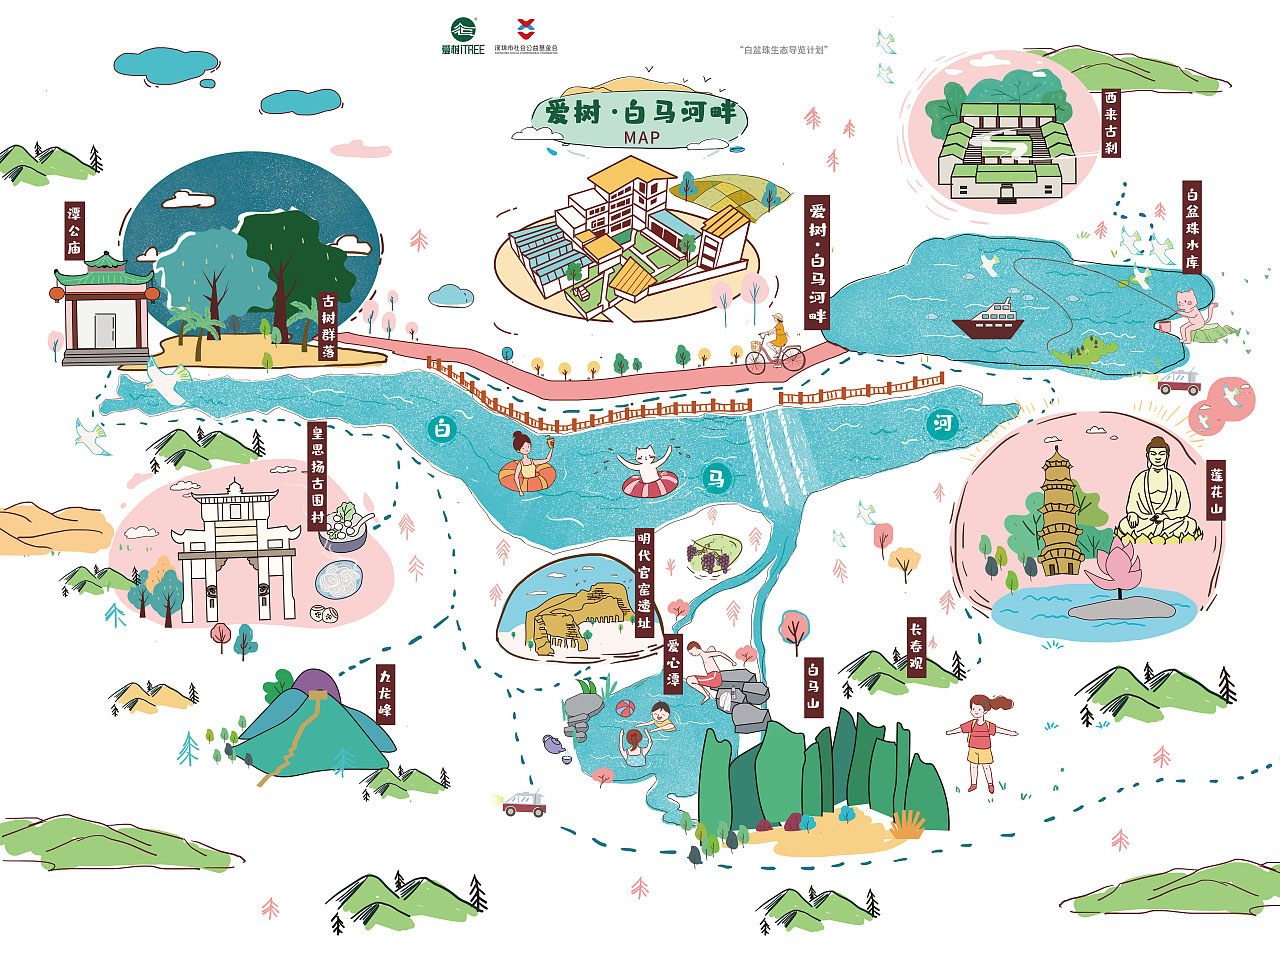 杭州语音导览让景区游览更加智能